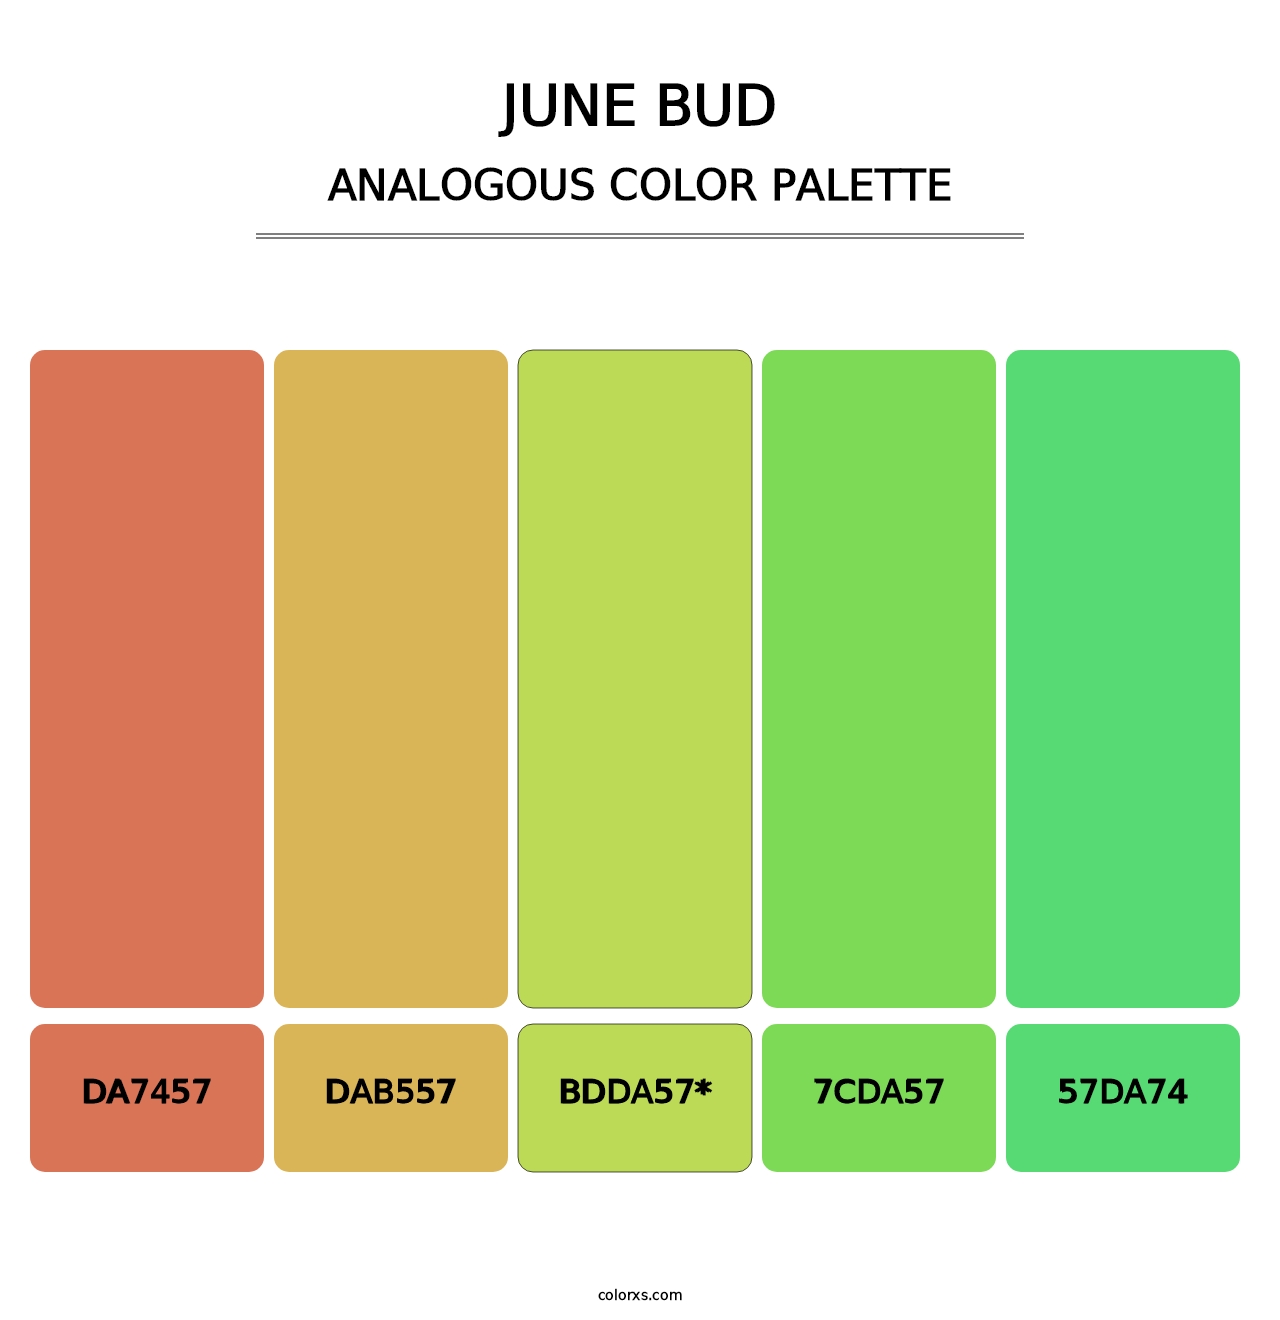 June Bud - Analogous Color Palette